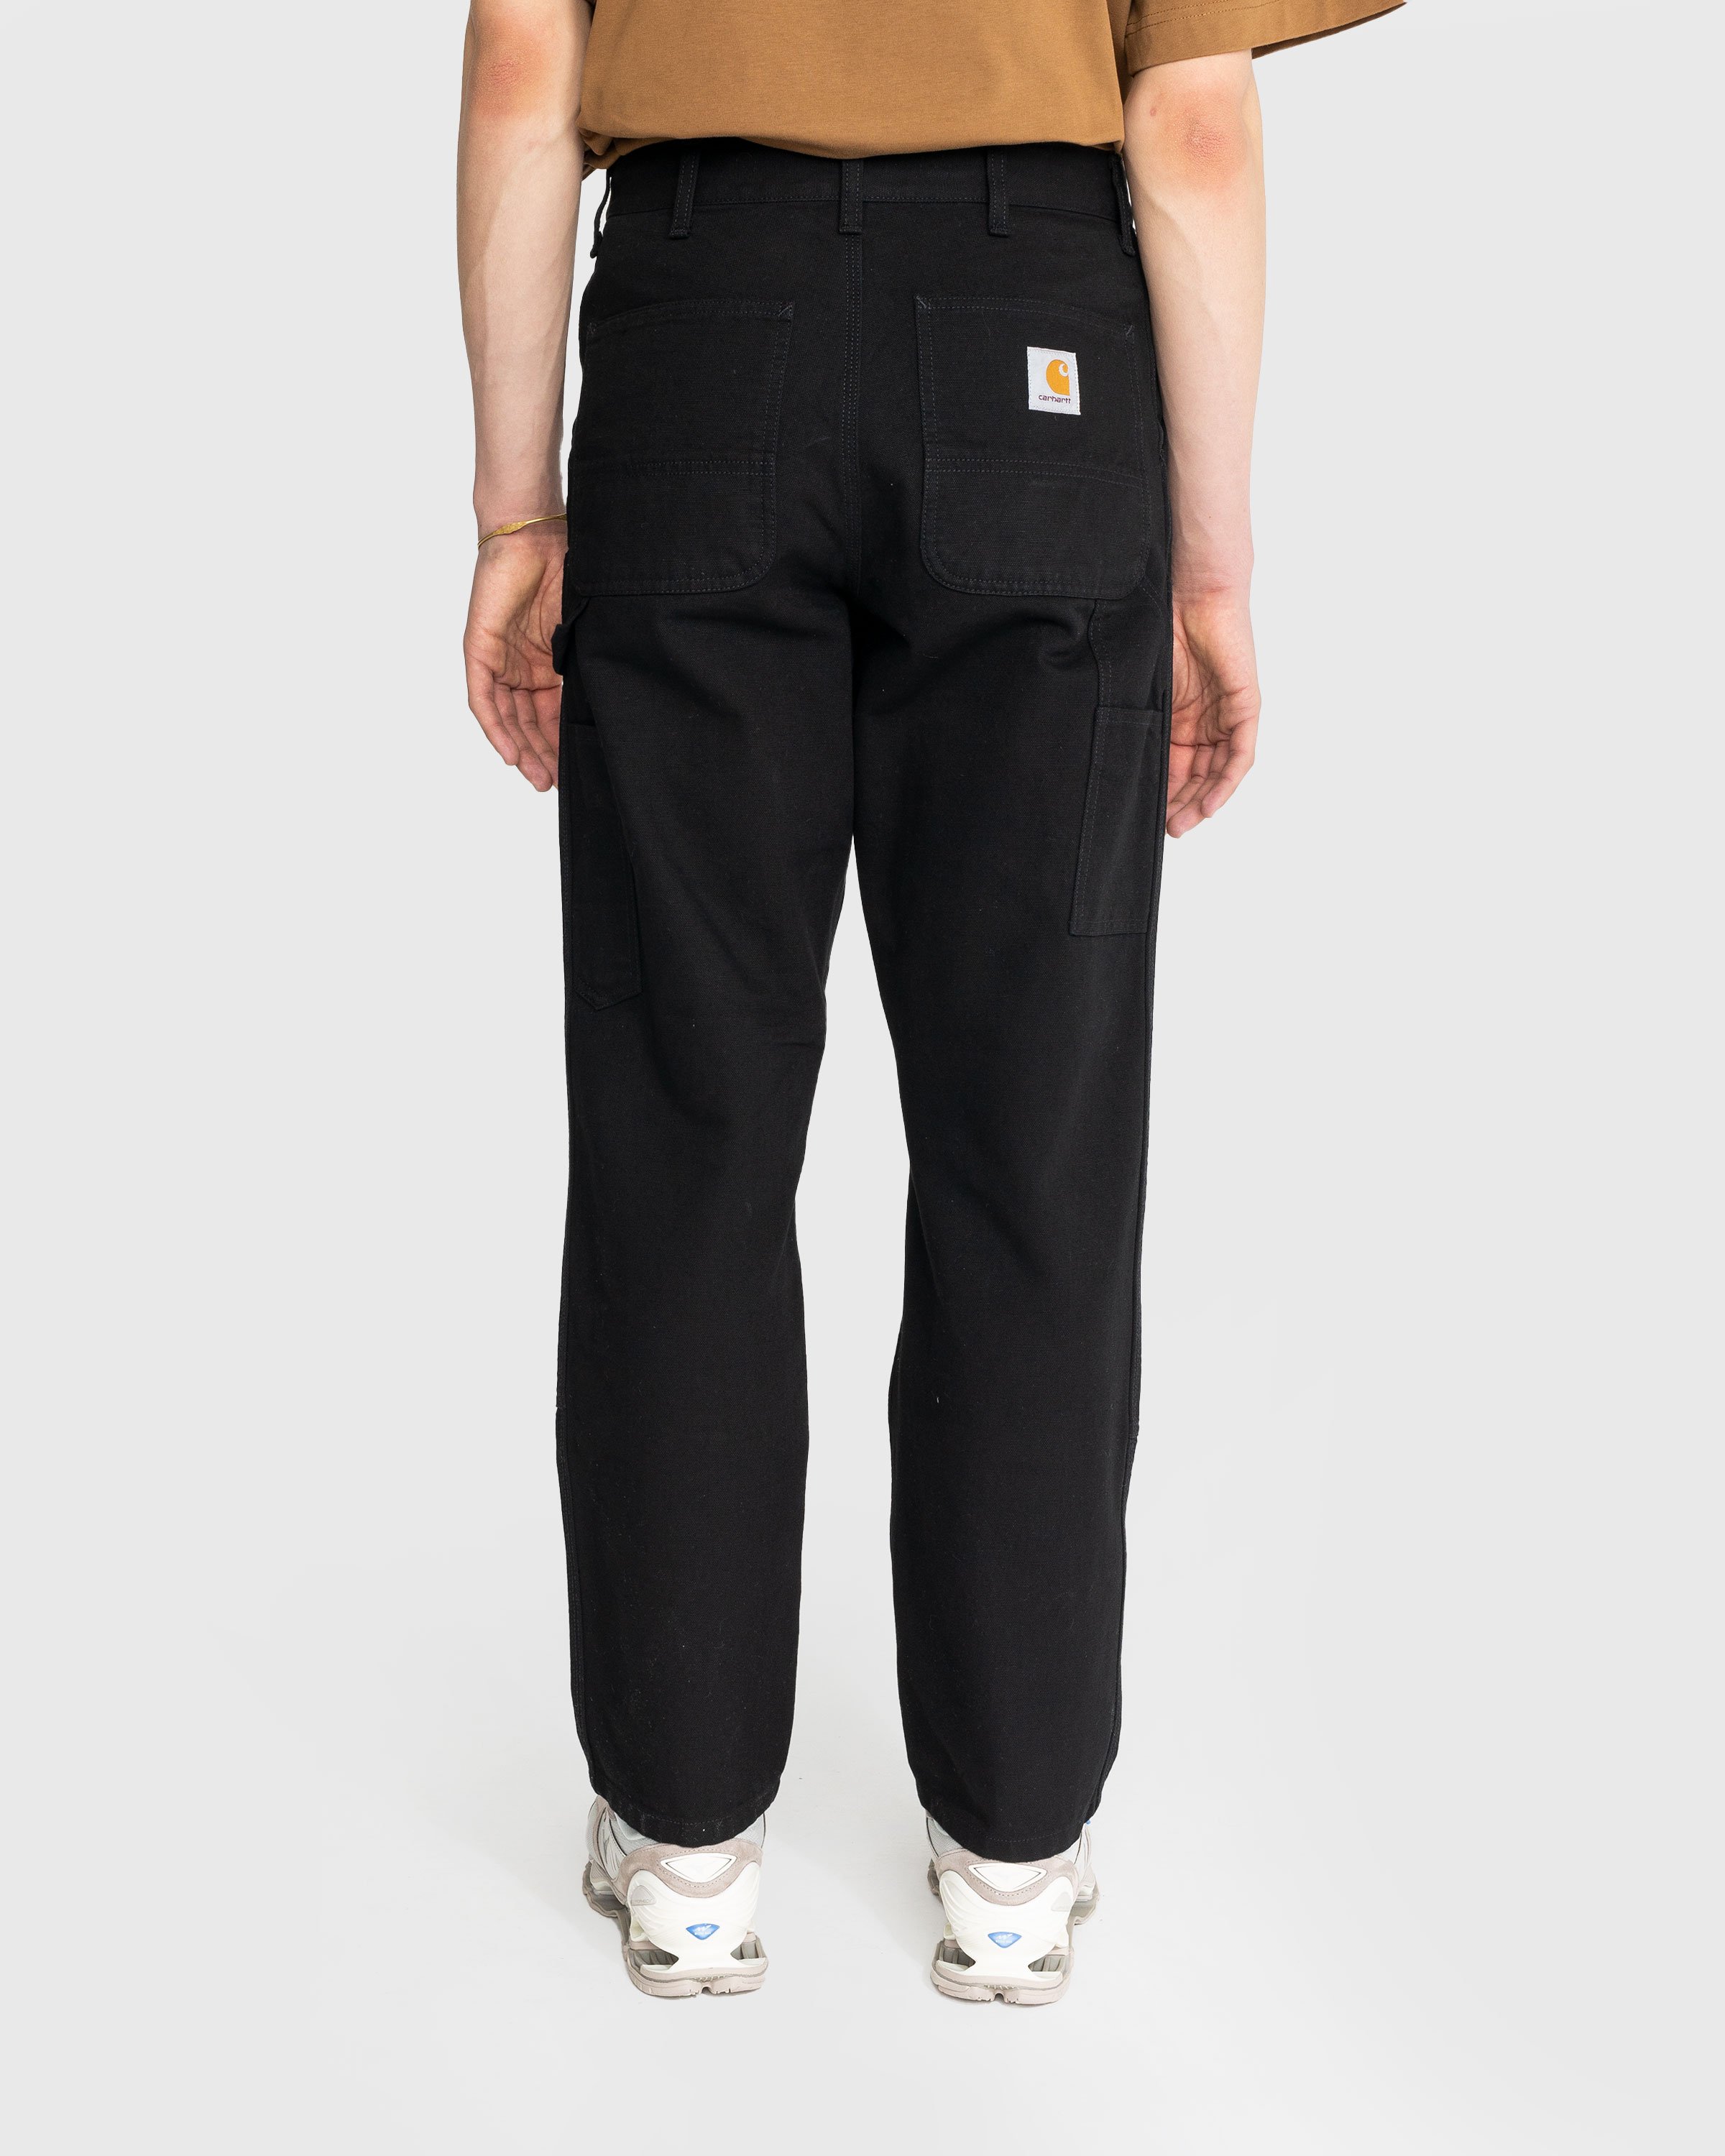 Carhartt WIP - Double Knee Pant Black Rinsed - Clothing - Black - Image 5